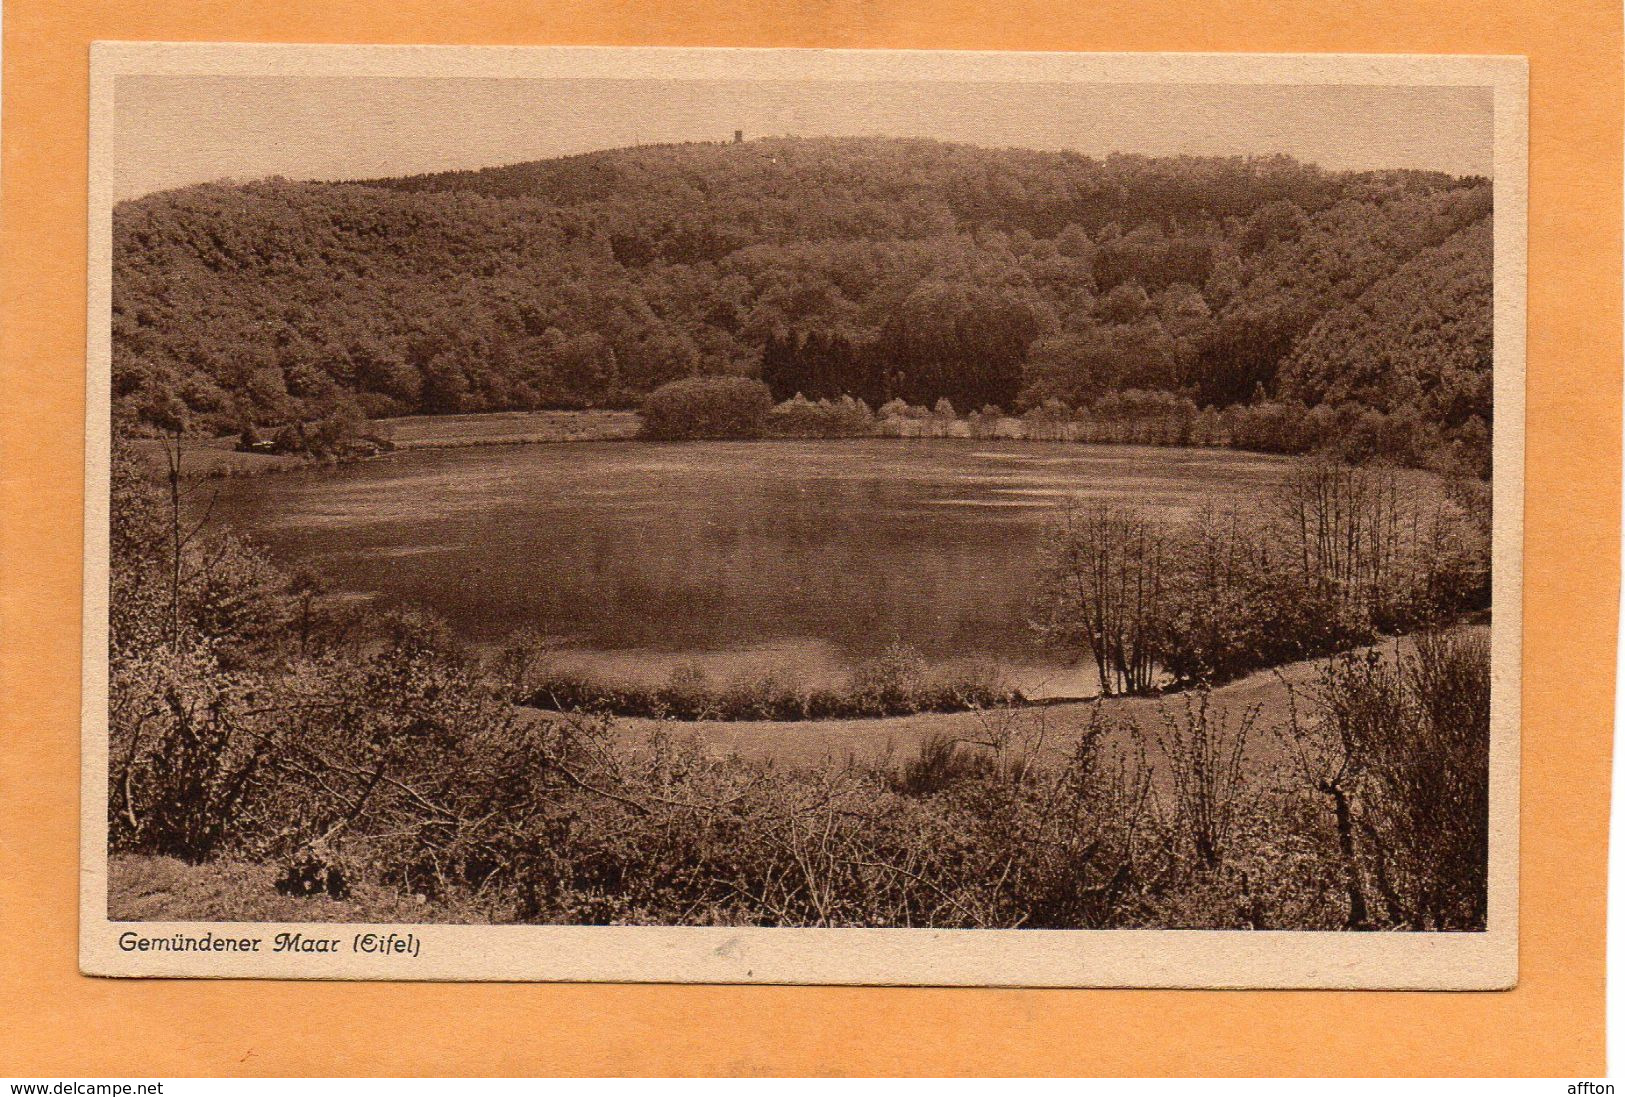 Daun Eifel Gemundener Maar Germany 1920 Postcard - Daun